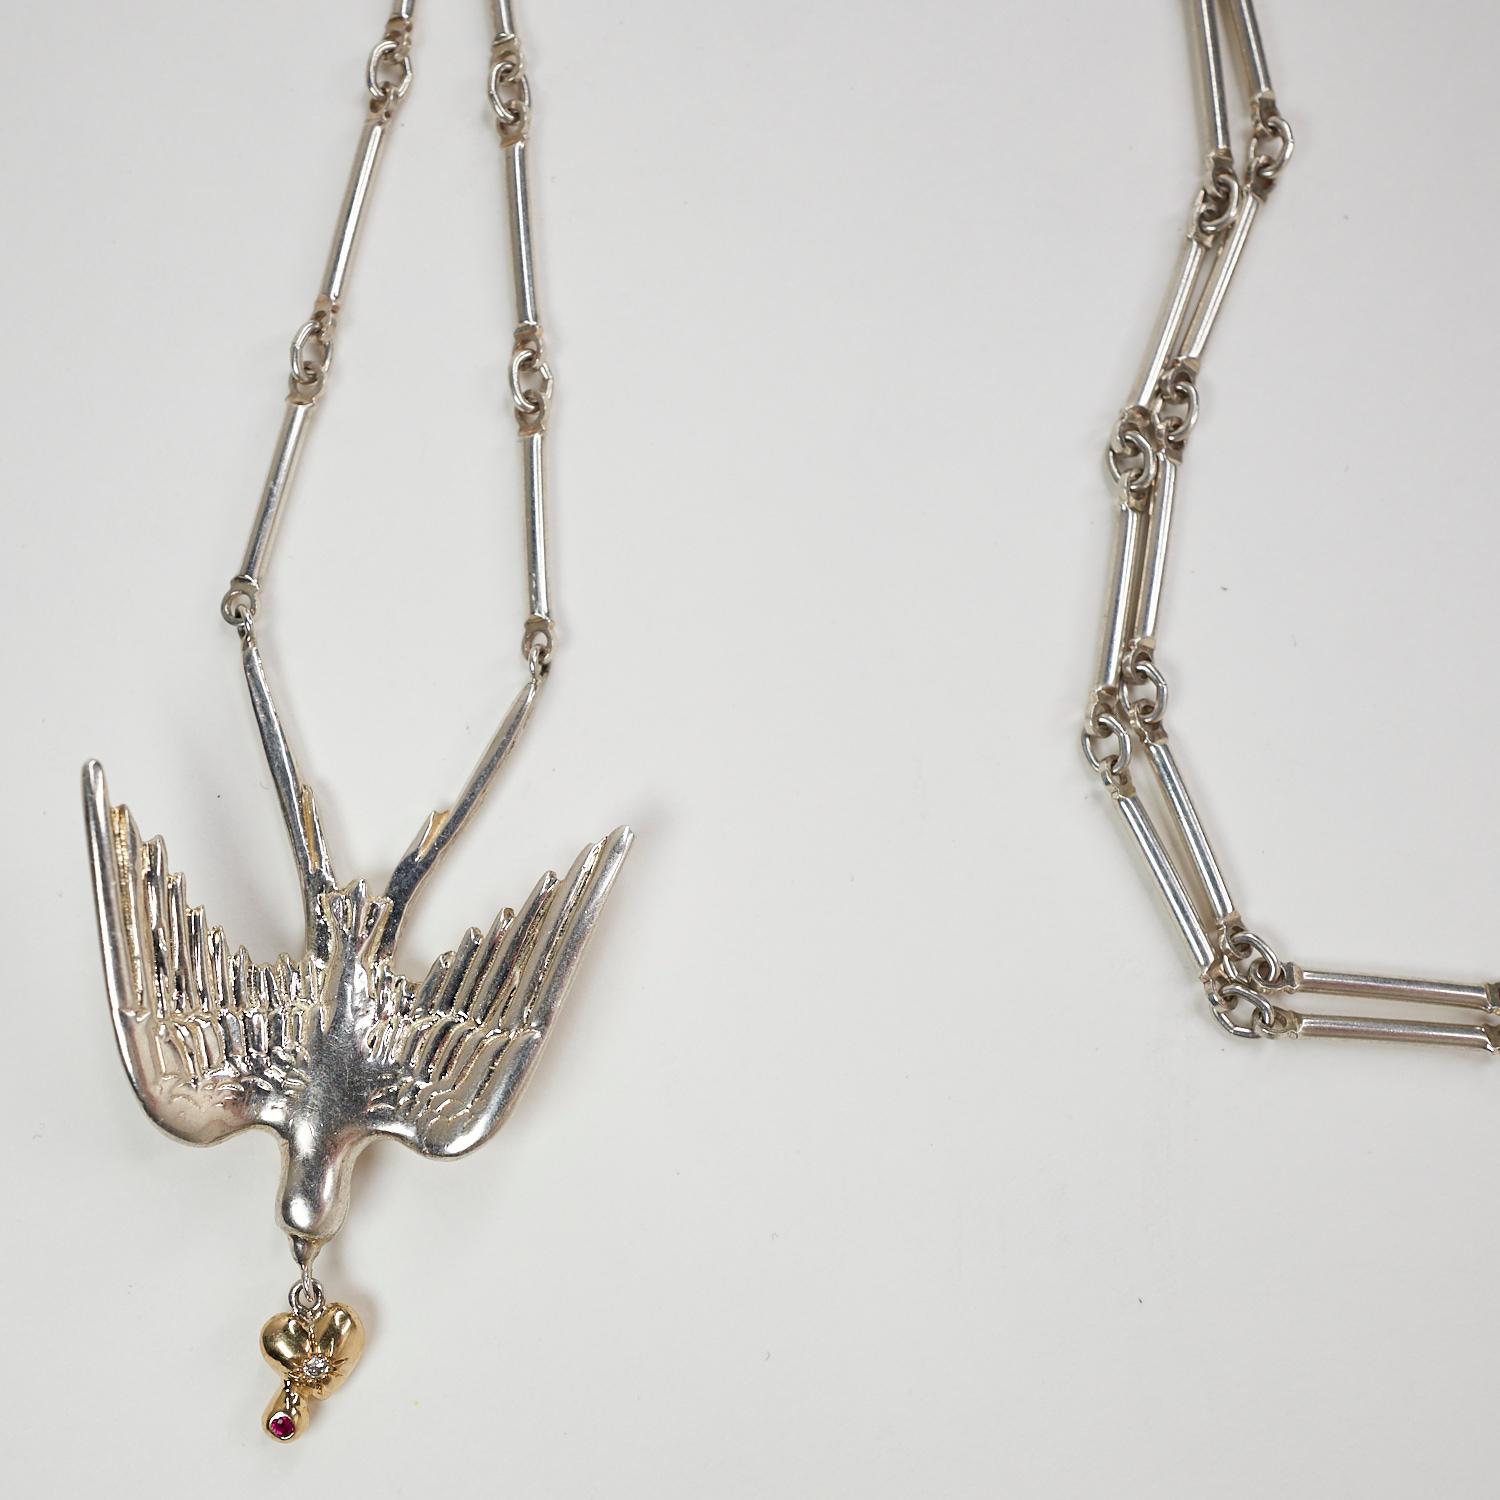 Brilliant Cut Dove Pendant Chain Necklace White Diamond Ruby Gold Heart Sterling Silver